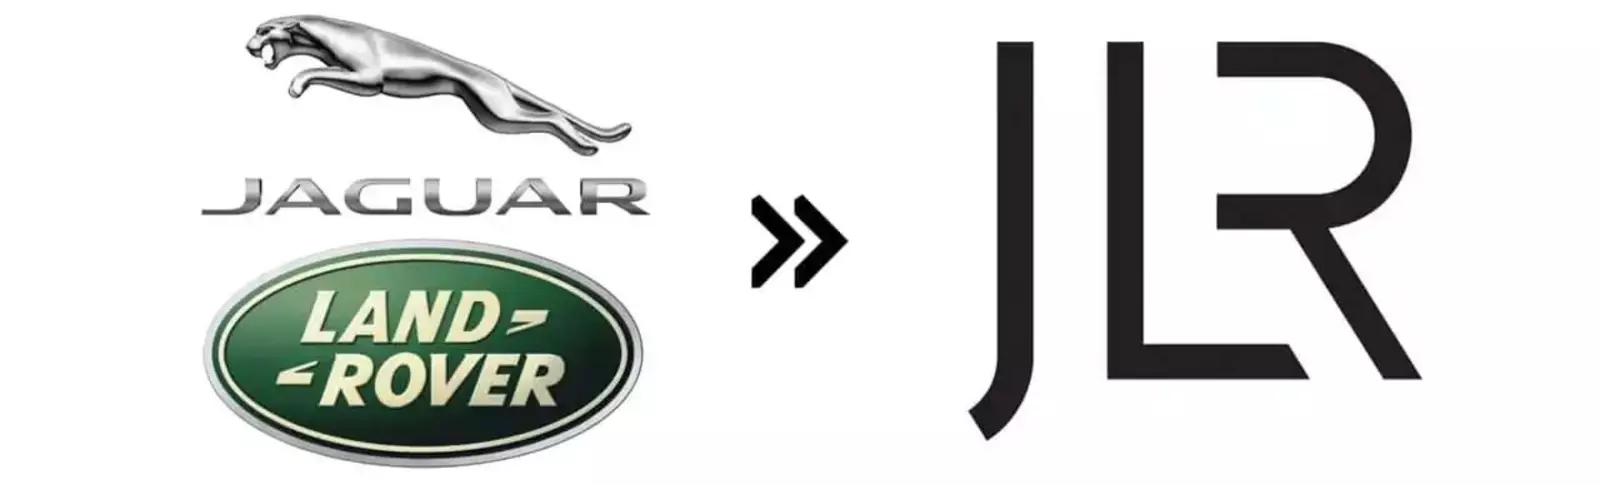 Как изменились логотипы автопроизводителей